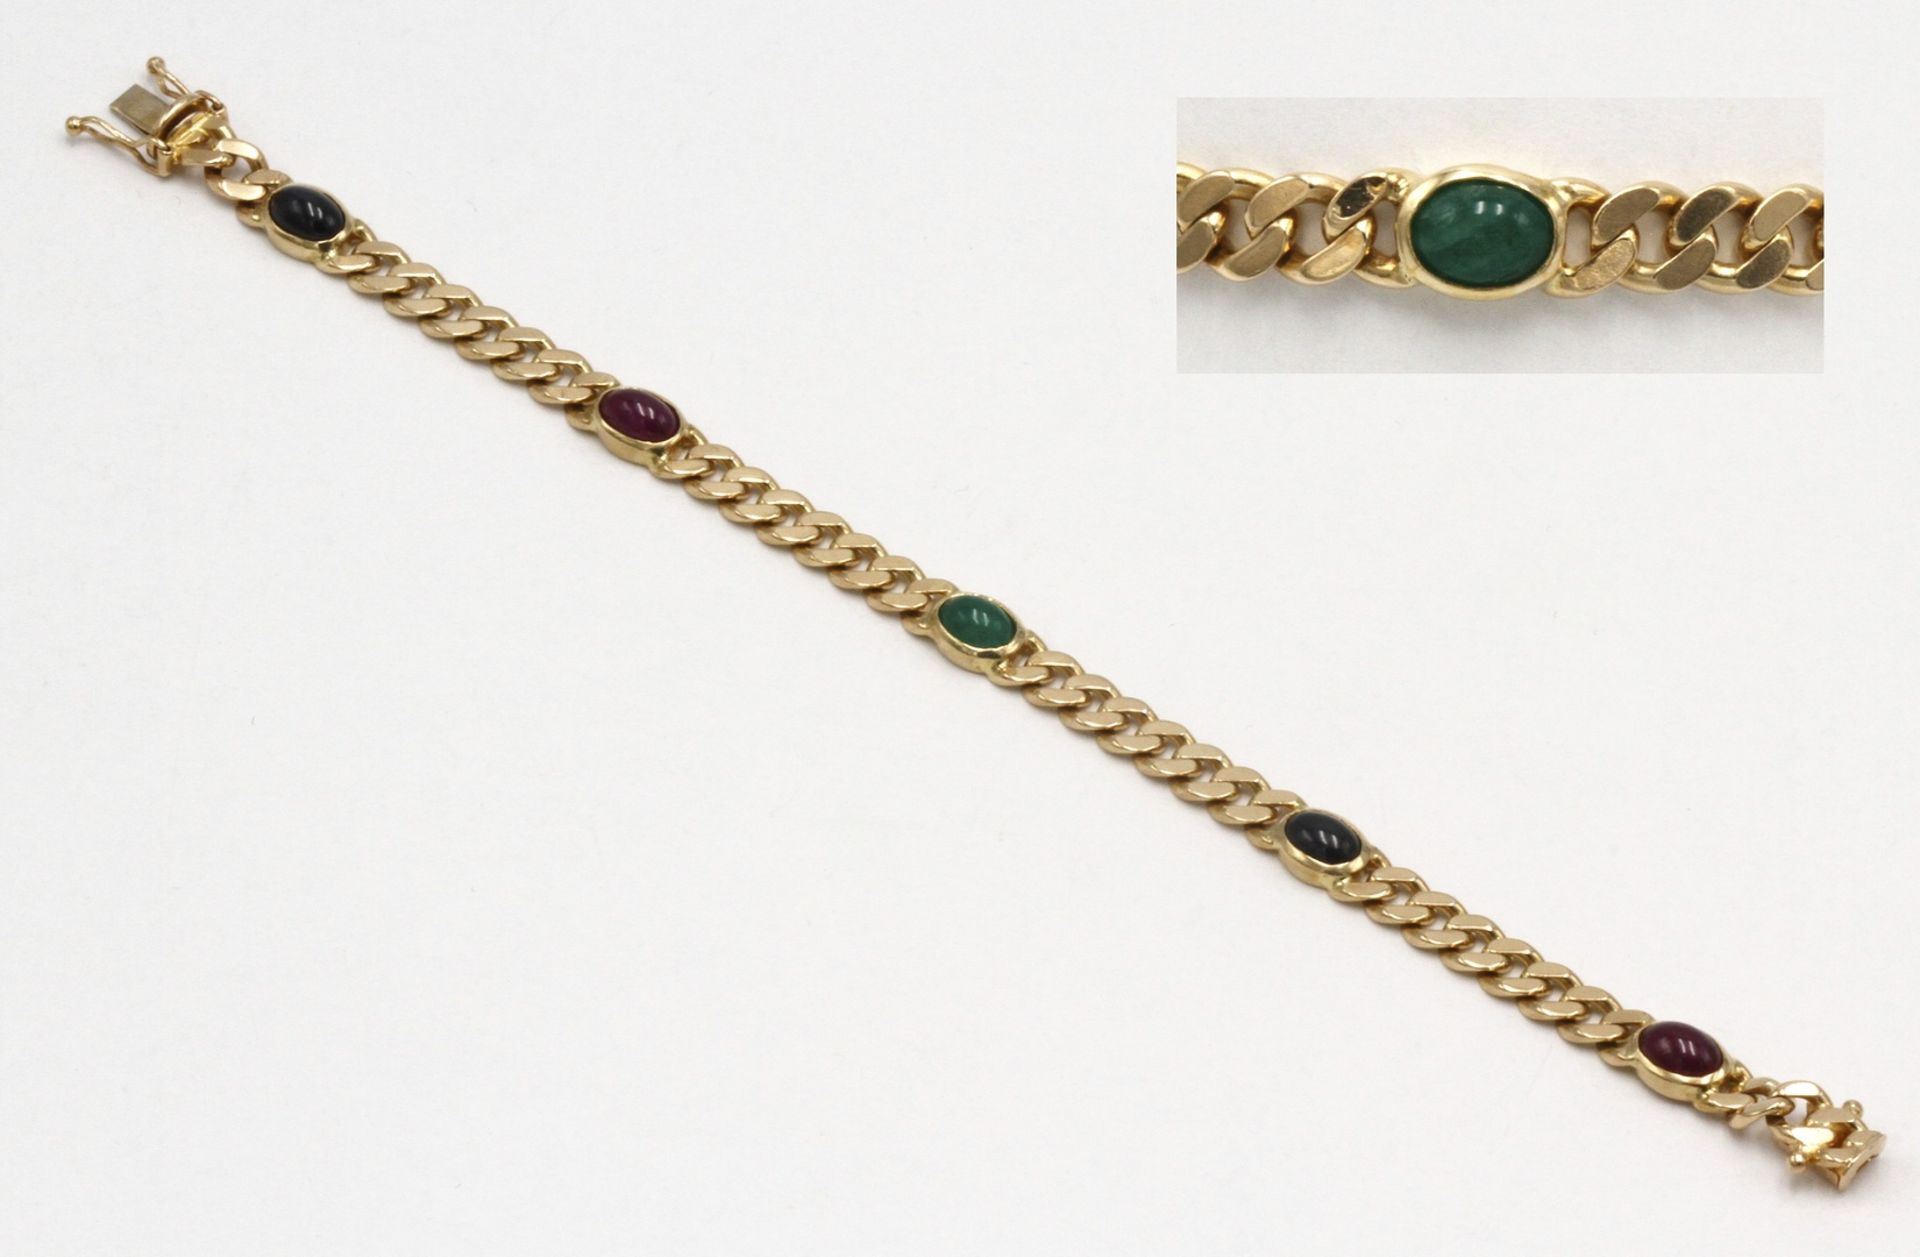 Armband mit Saphir, Rubin und Smaragd585/- Gelbgold, zwei ca. 1,3 ct Saphire, zwei ca. 1,3 ct